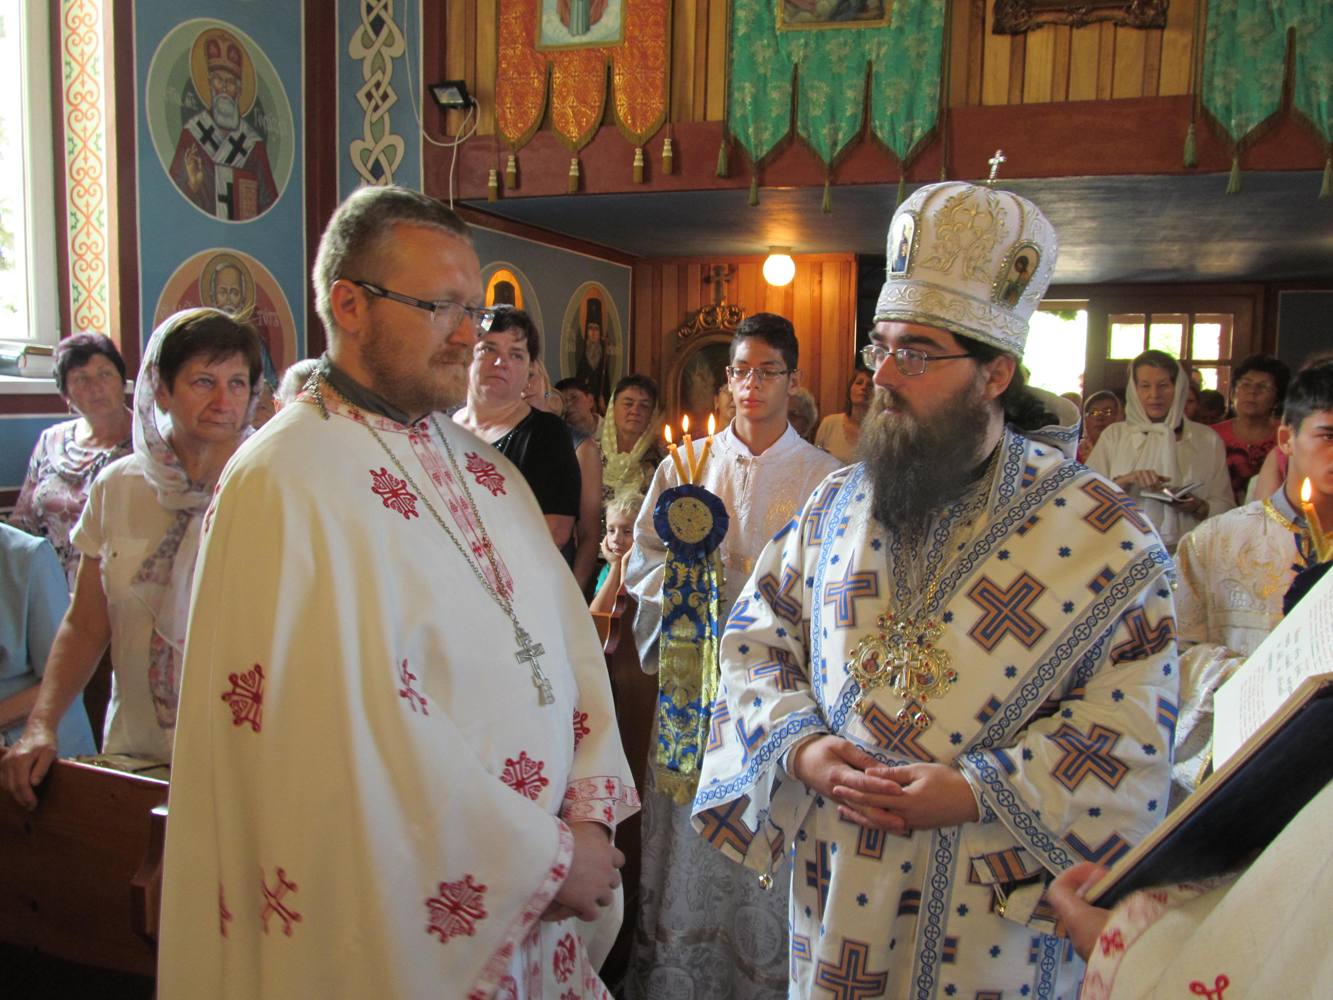 Українці у Словаччині зустрічали архієпископа Пряшівського, який вітав священика Андрія Никулина з ювілеєм (ФОТО)